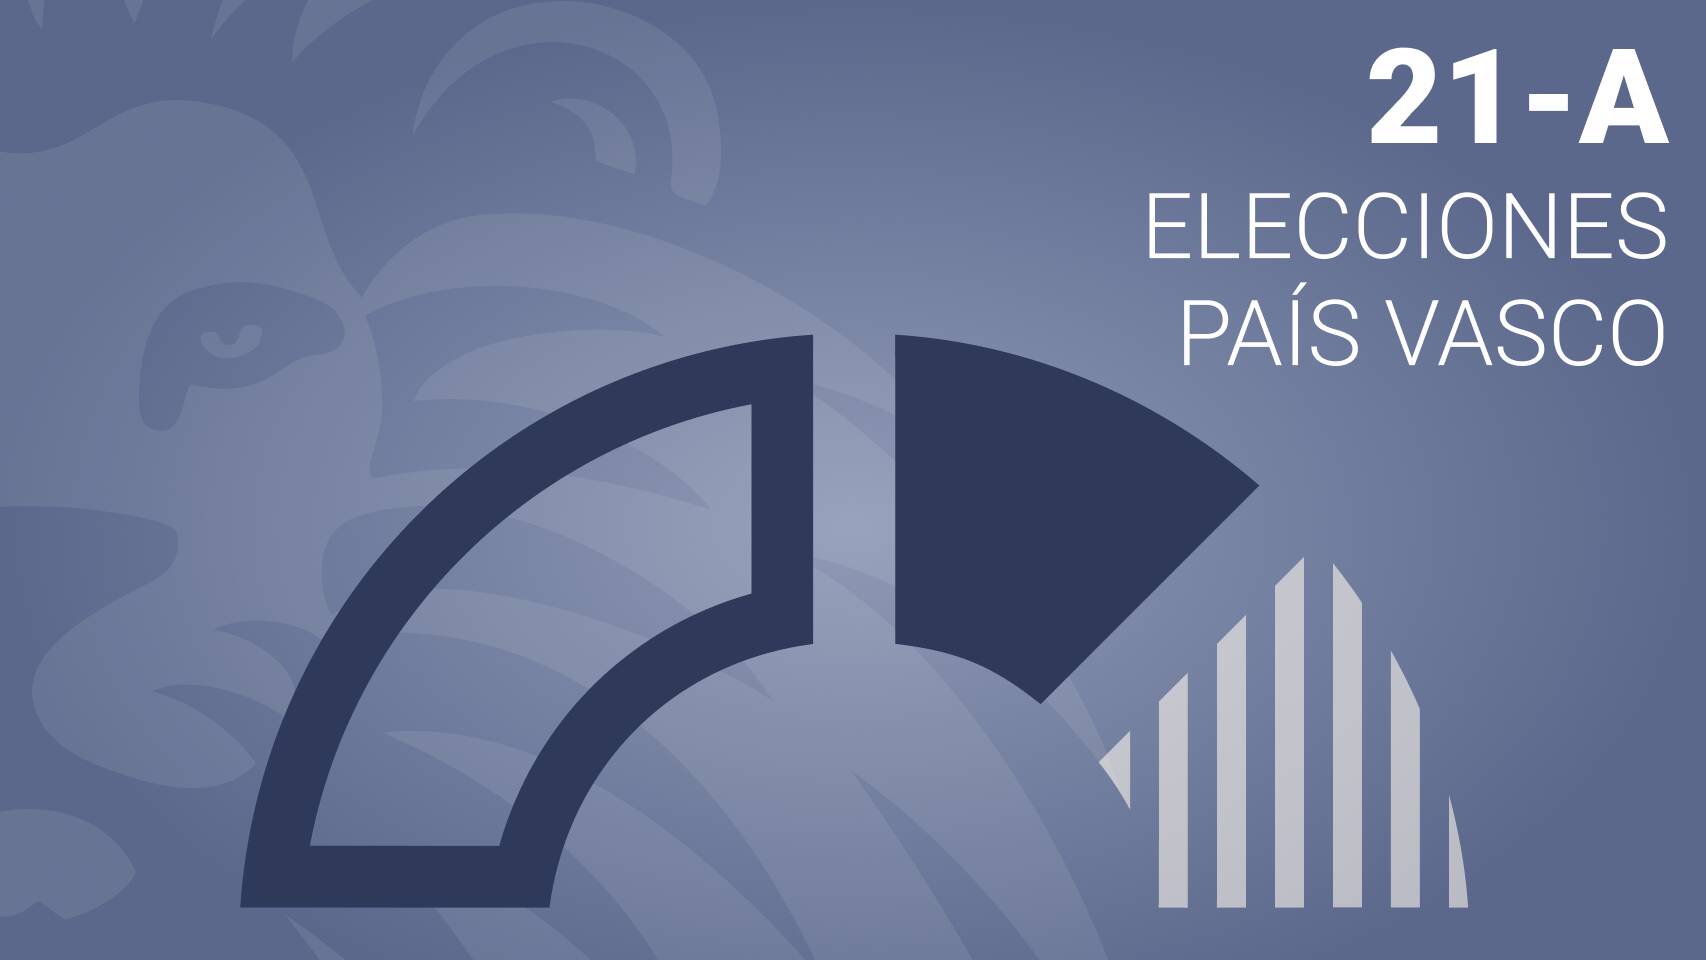 Estos son los resultados de las elecciones vascas en Aulesti - EH BILDU gana con el 64.83% de los votos